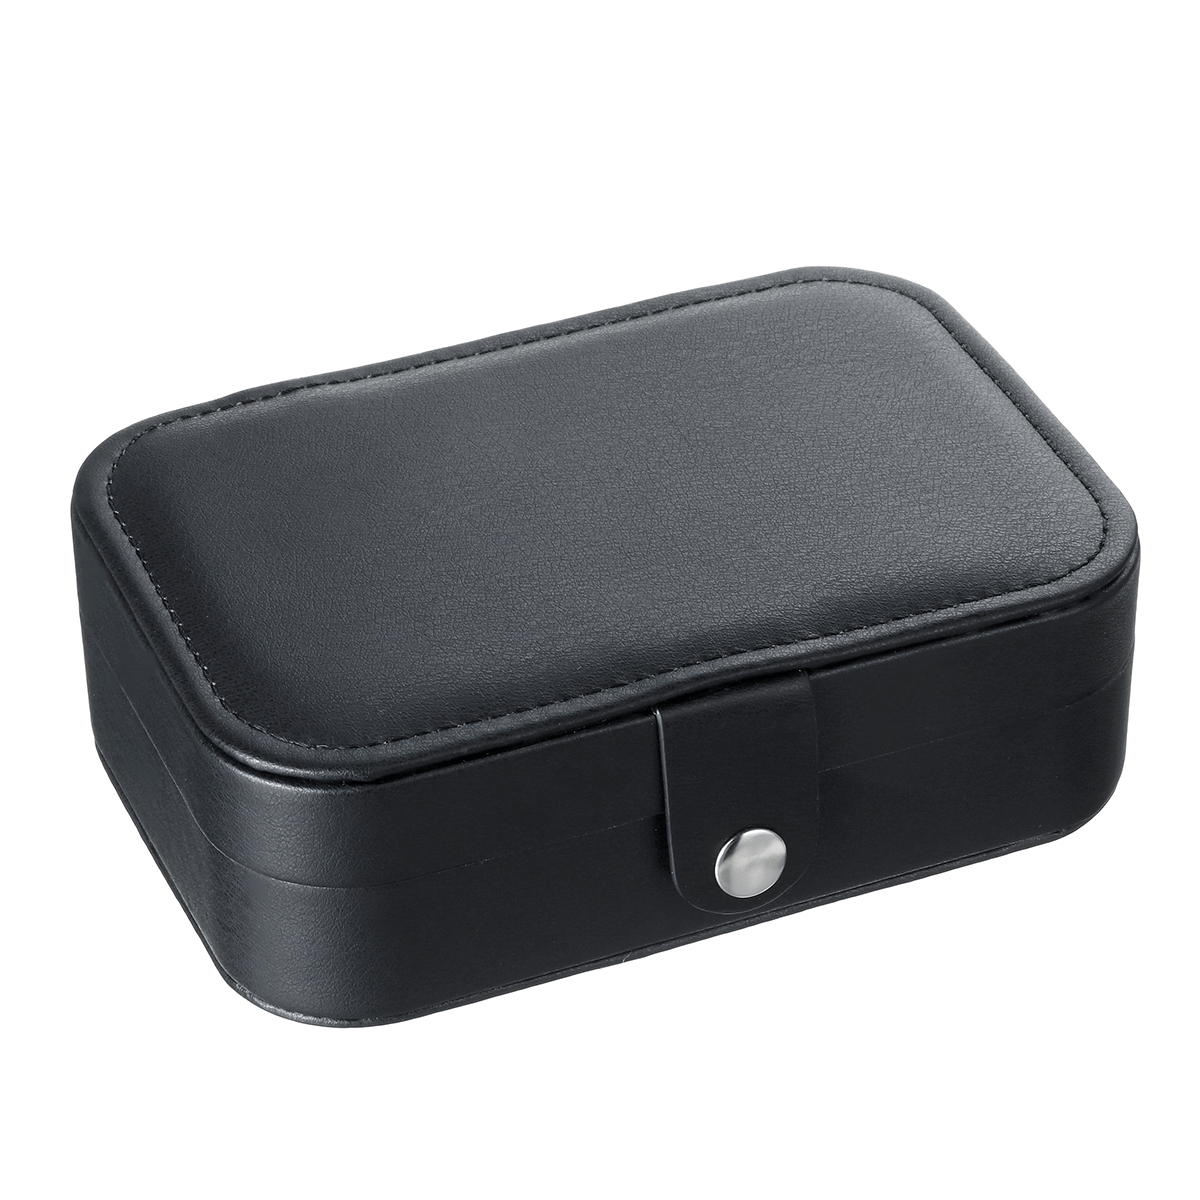 Travel-Portable-Leather-Jewelry-Watch-Storage-Watch-Box-Case-Organizer-1672485-10